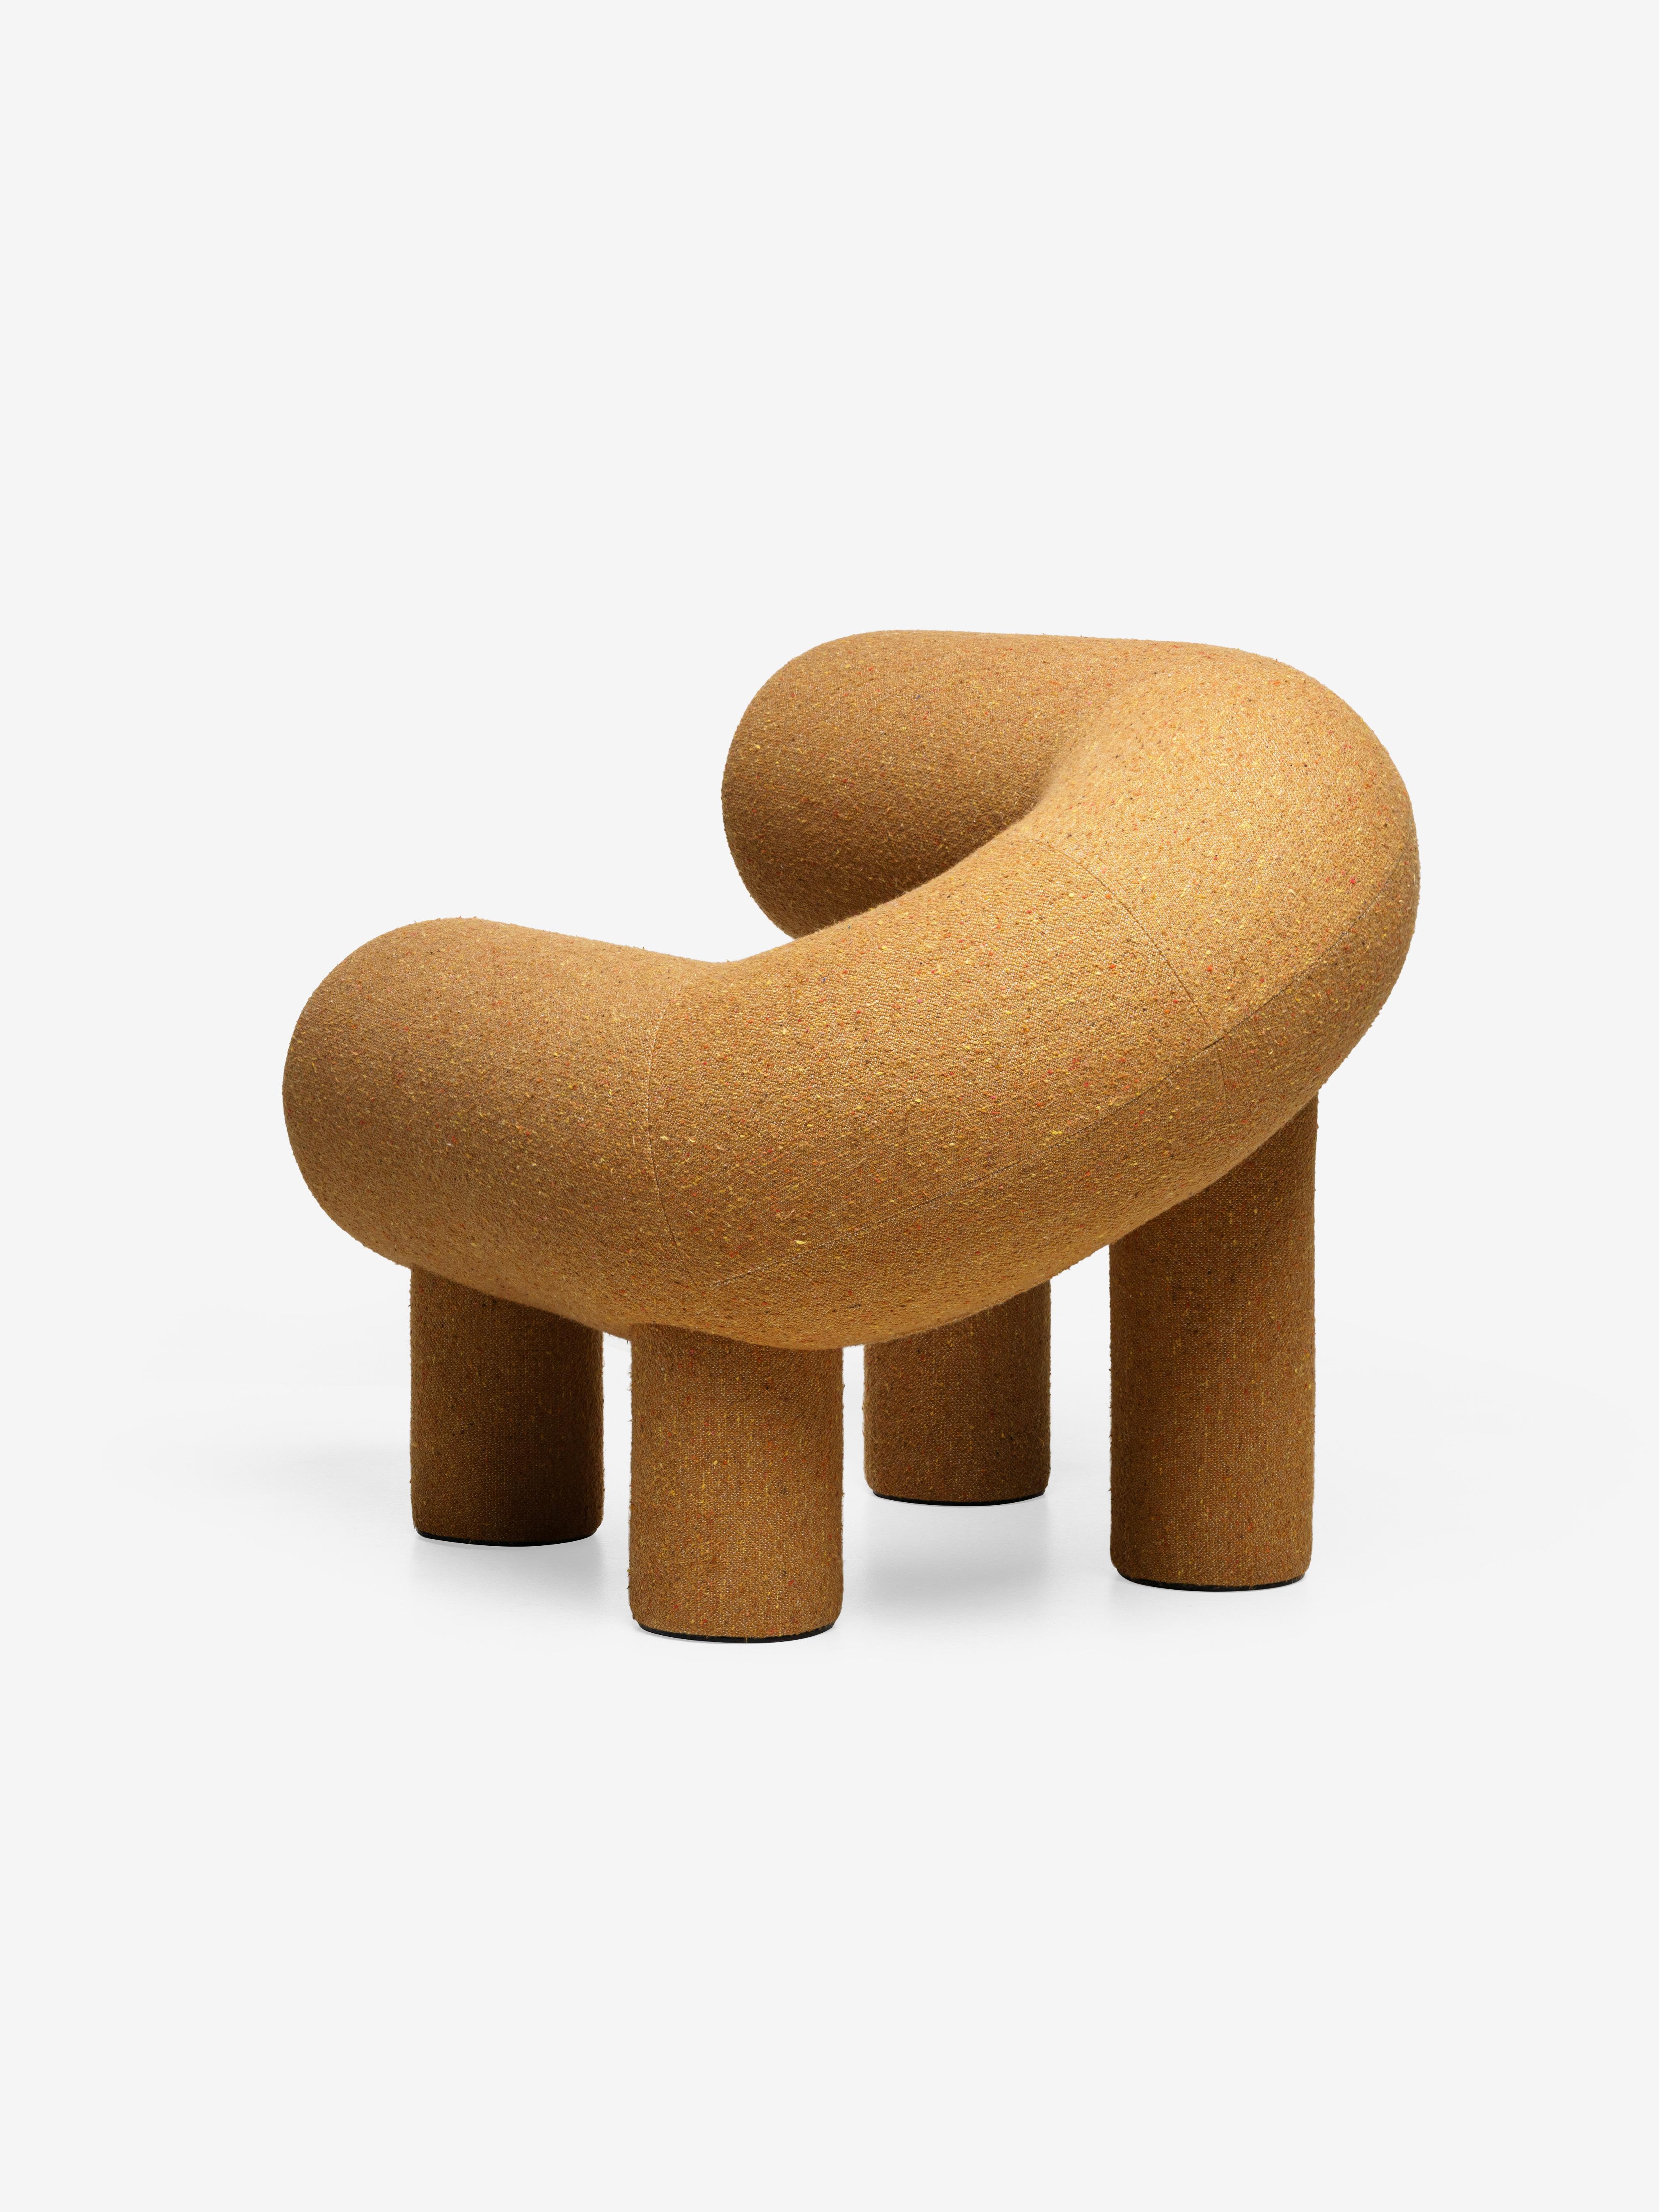 Le designer Rostislav Sorokoviy a cherché à créer un objet qui ressemble à une sculpture souple plutôt qu'à un meuble. 
L'assise et le dossier du fauteuil sont constitués de deux cylindres reliés en fer à cheval. Les pattes sont également